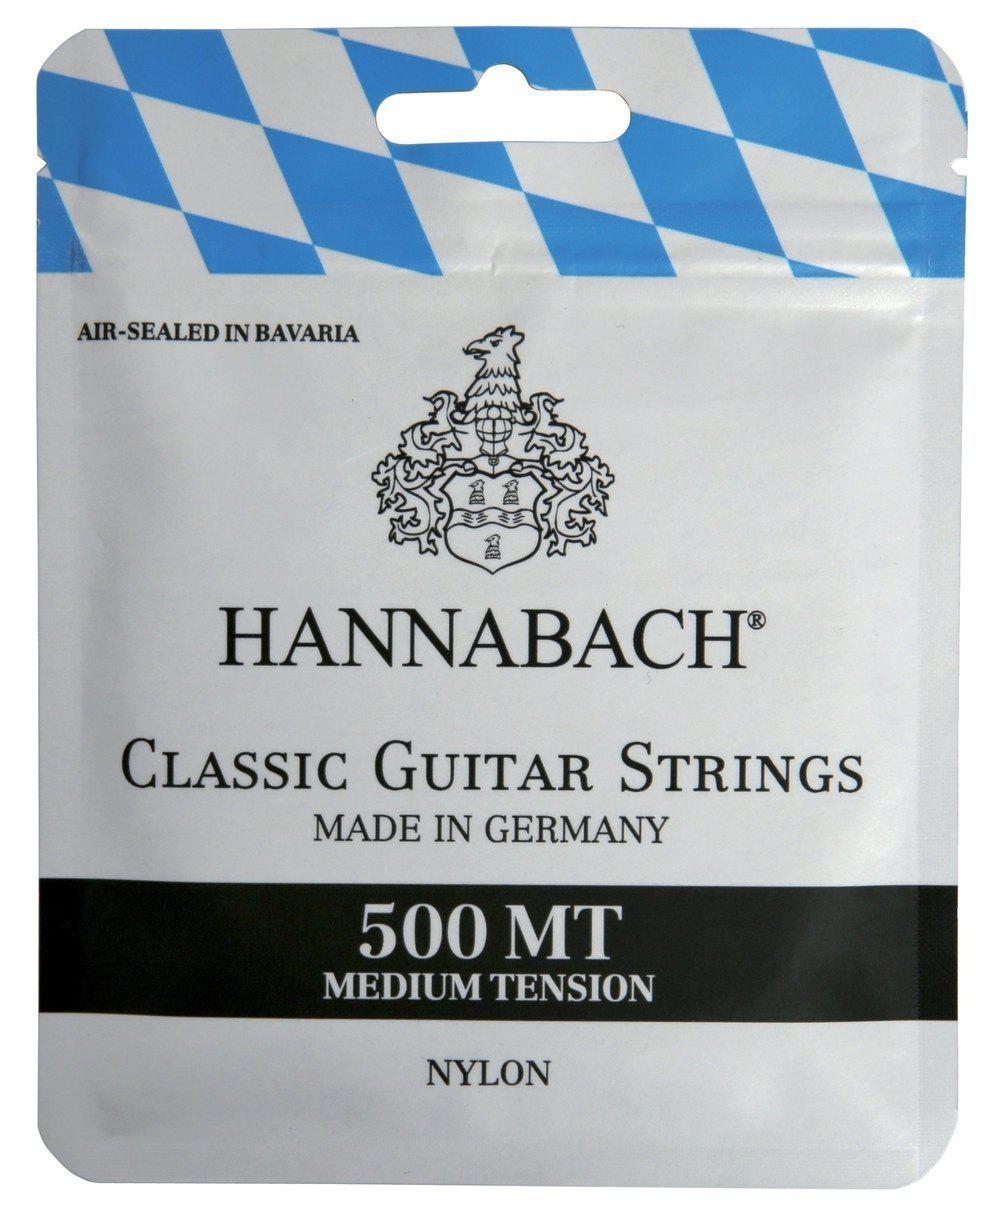 Hannabach 500 MT Medium Tension - Struny do gitary klasycznej o średnim naciągu